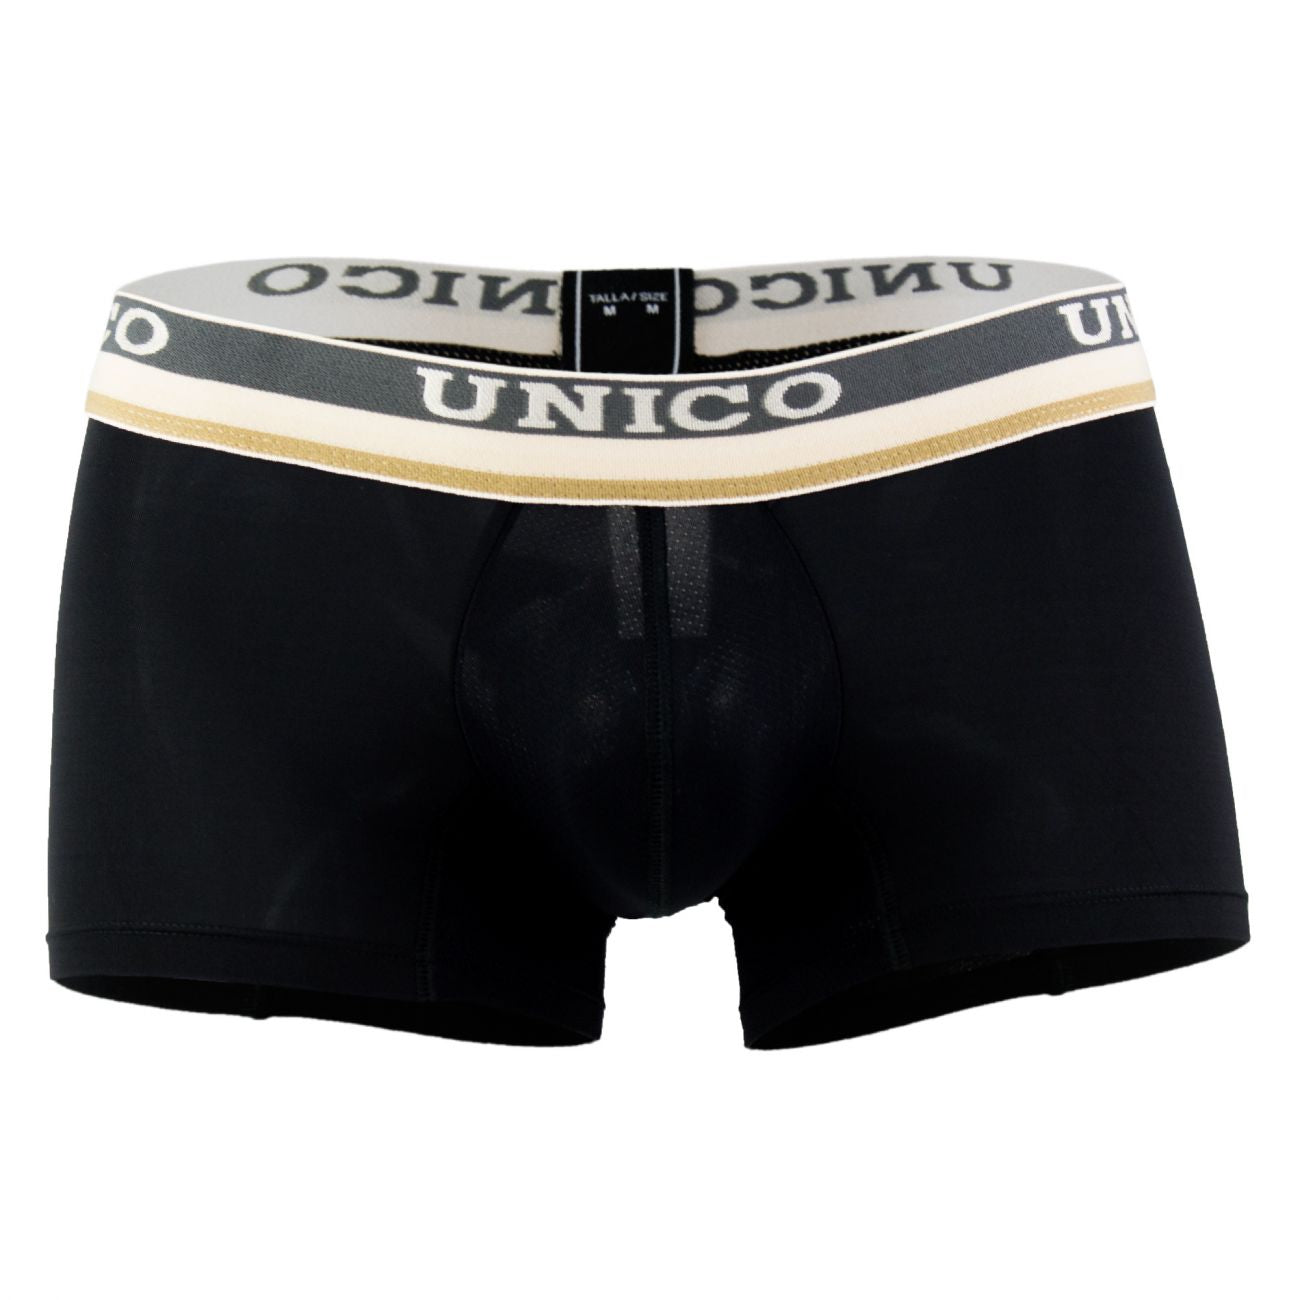 Unico 1802010013599 Boxer Briefs Visionario Black